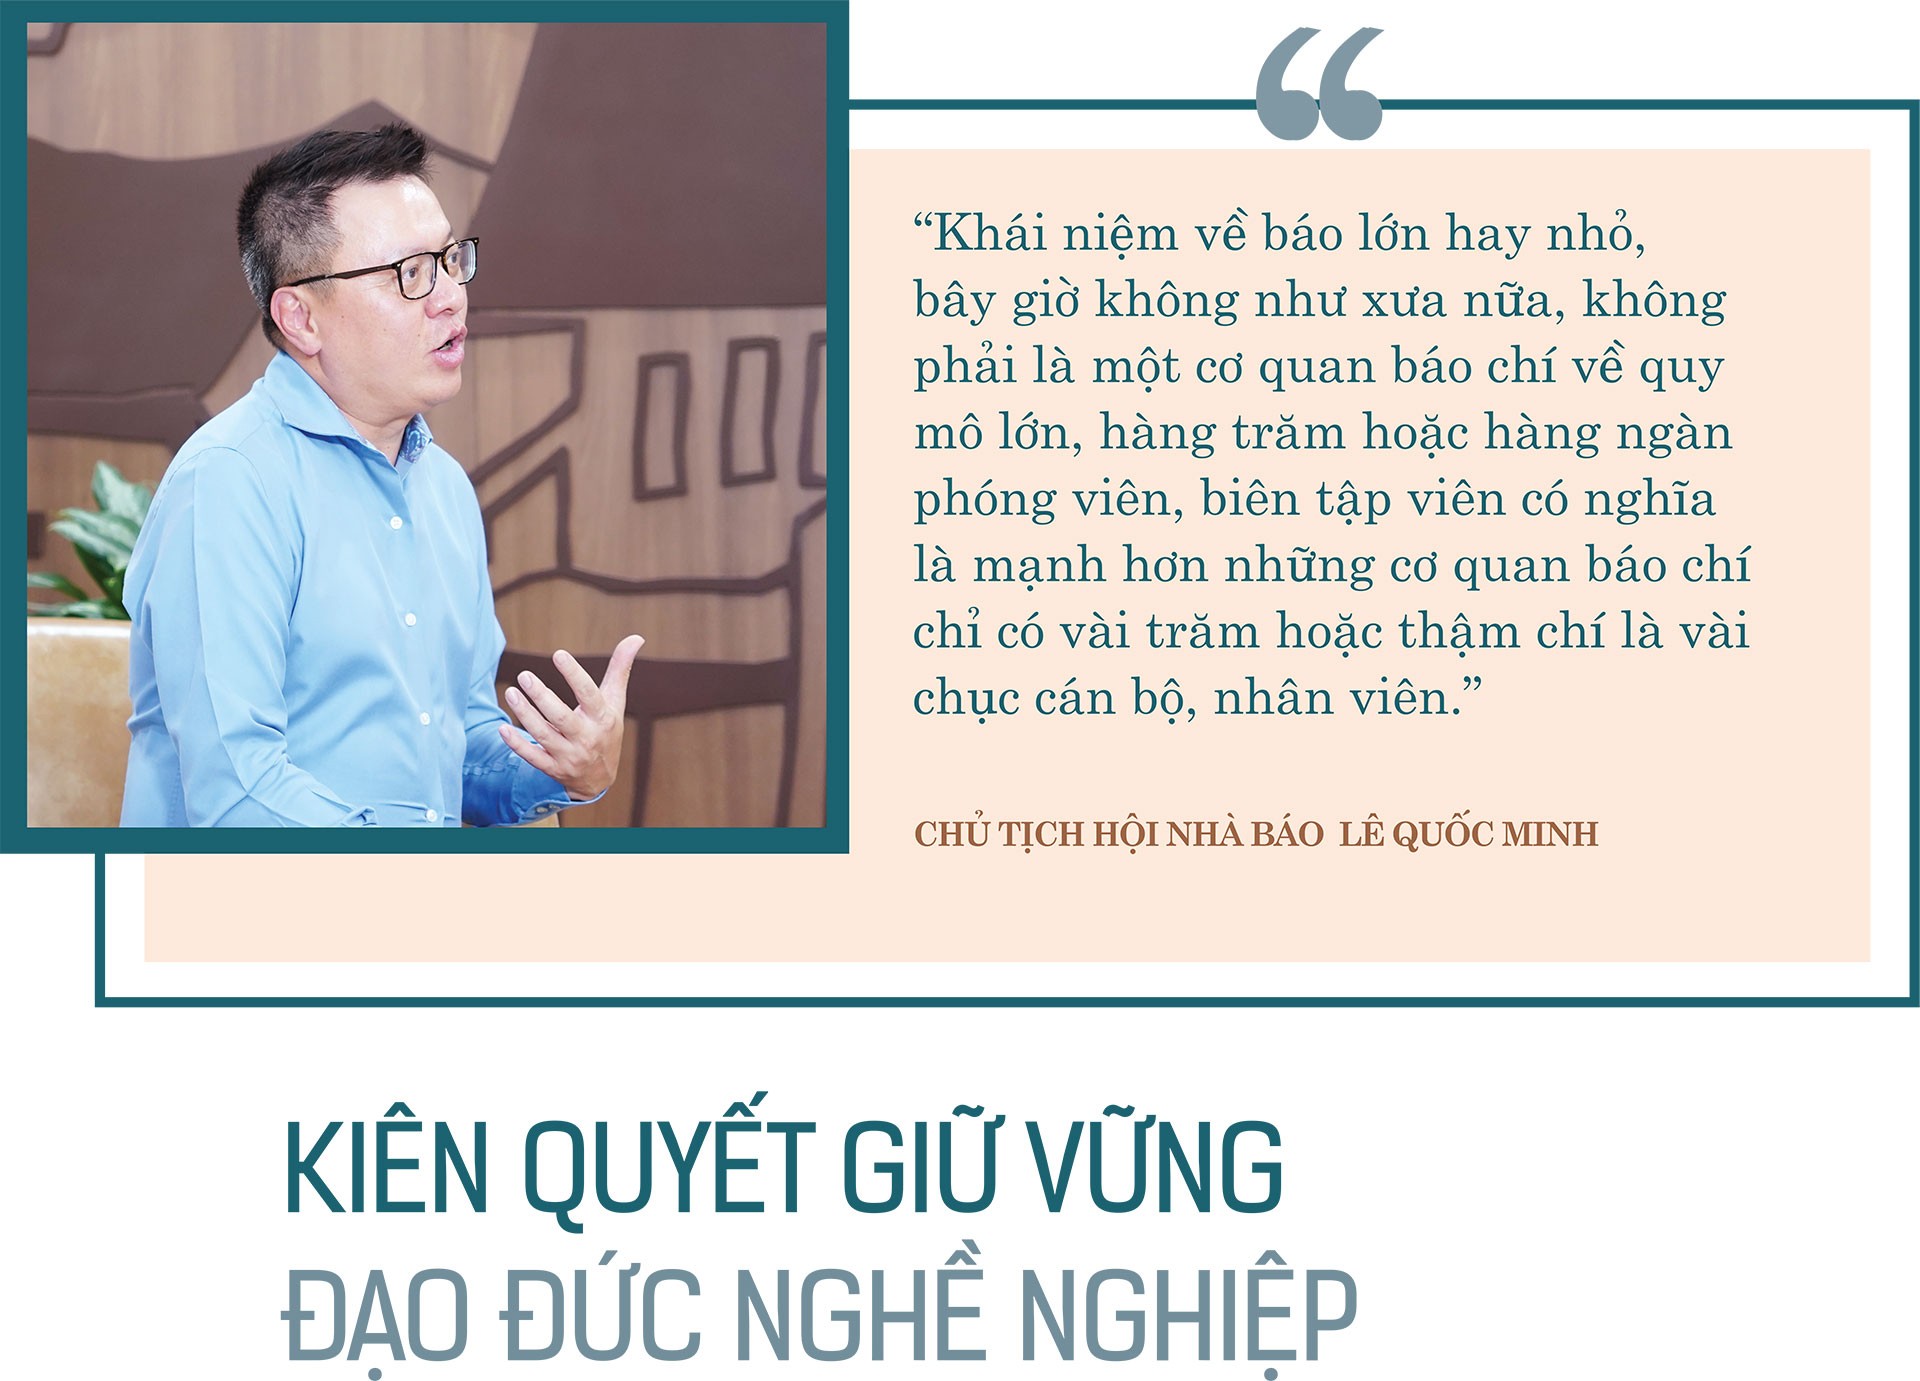 Lê Quốc Minh - Chủ tịch Hội nhà báo Việt Nam